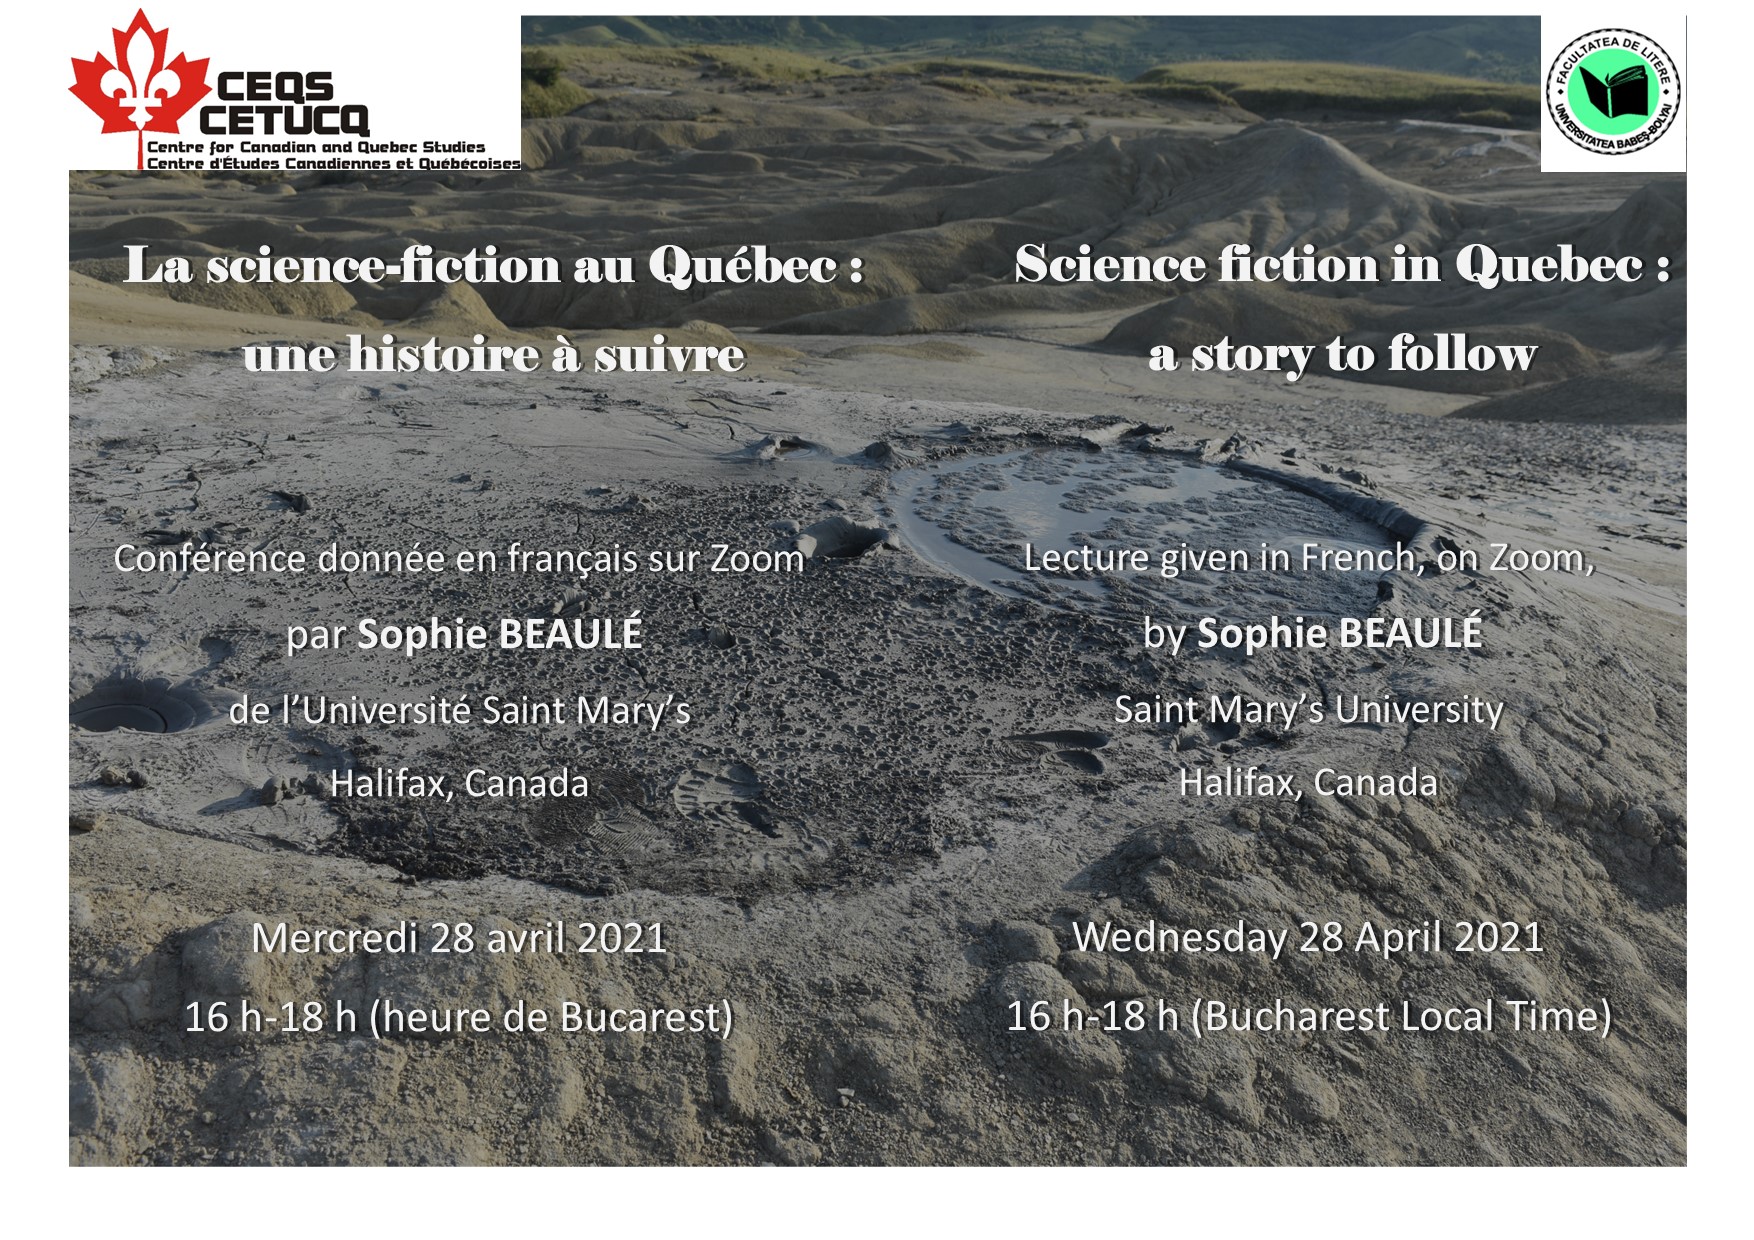 La science-fiction au Québec : une histoire à suivre